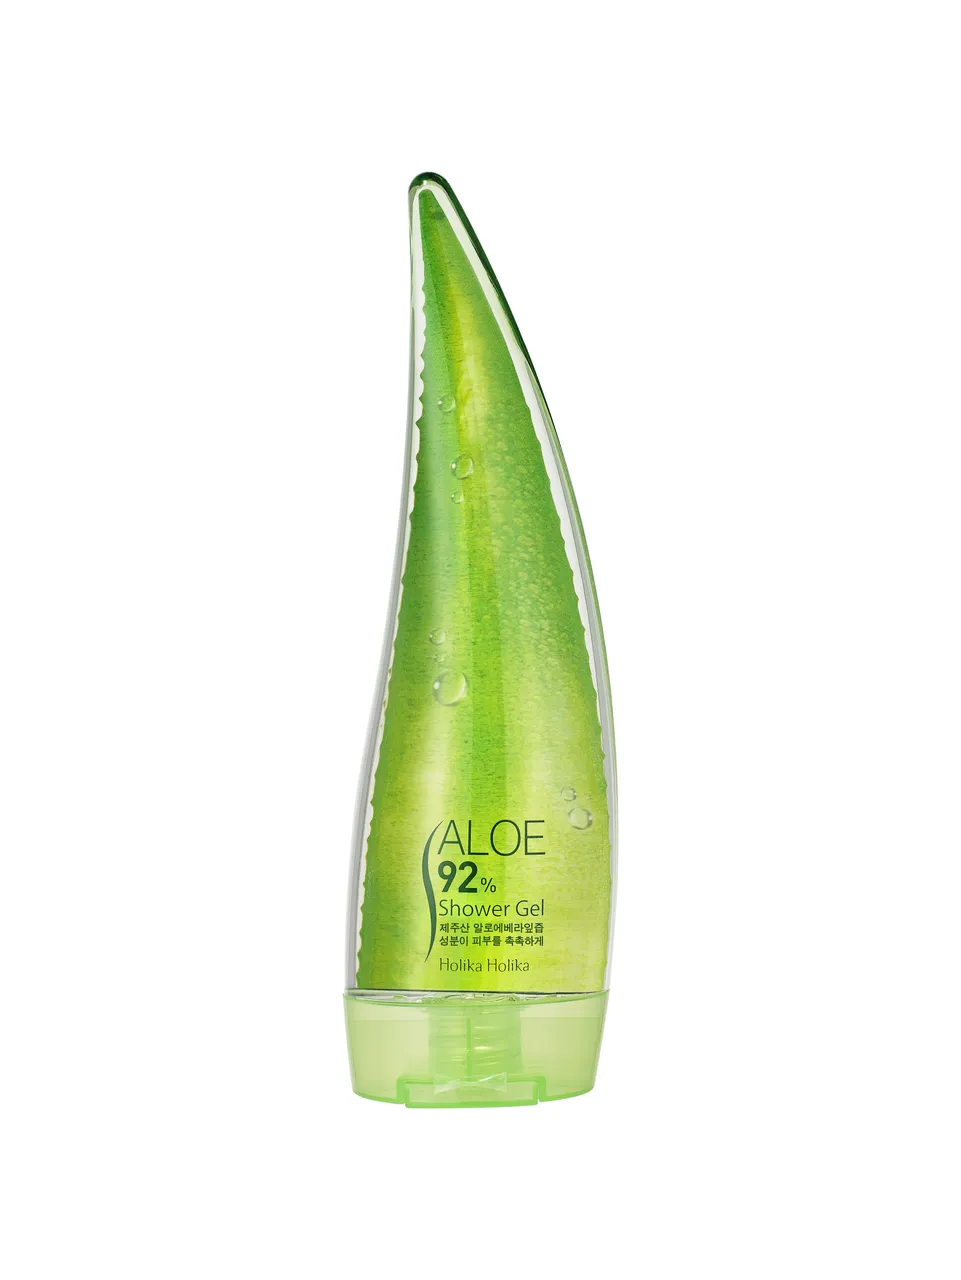 Holika Holika Aloe 92% Shower Gel, delikatny żel pod prysznic, 250 ml